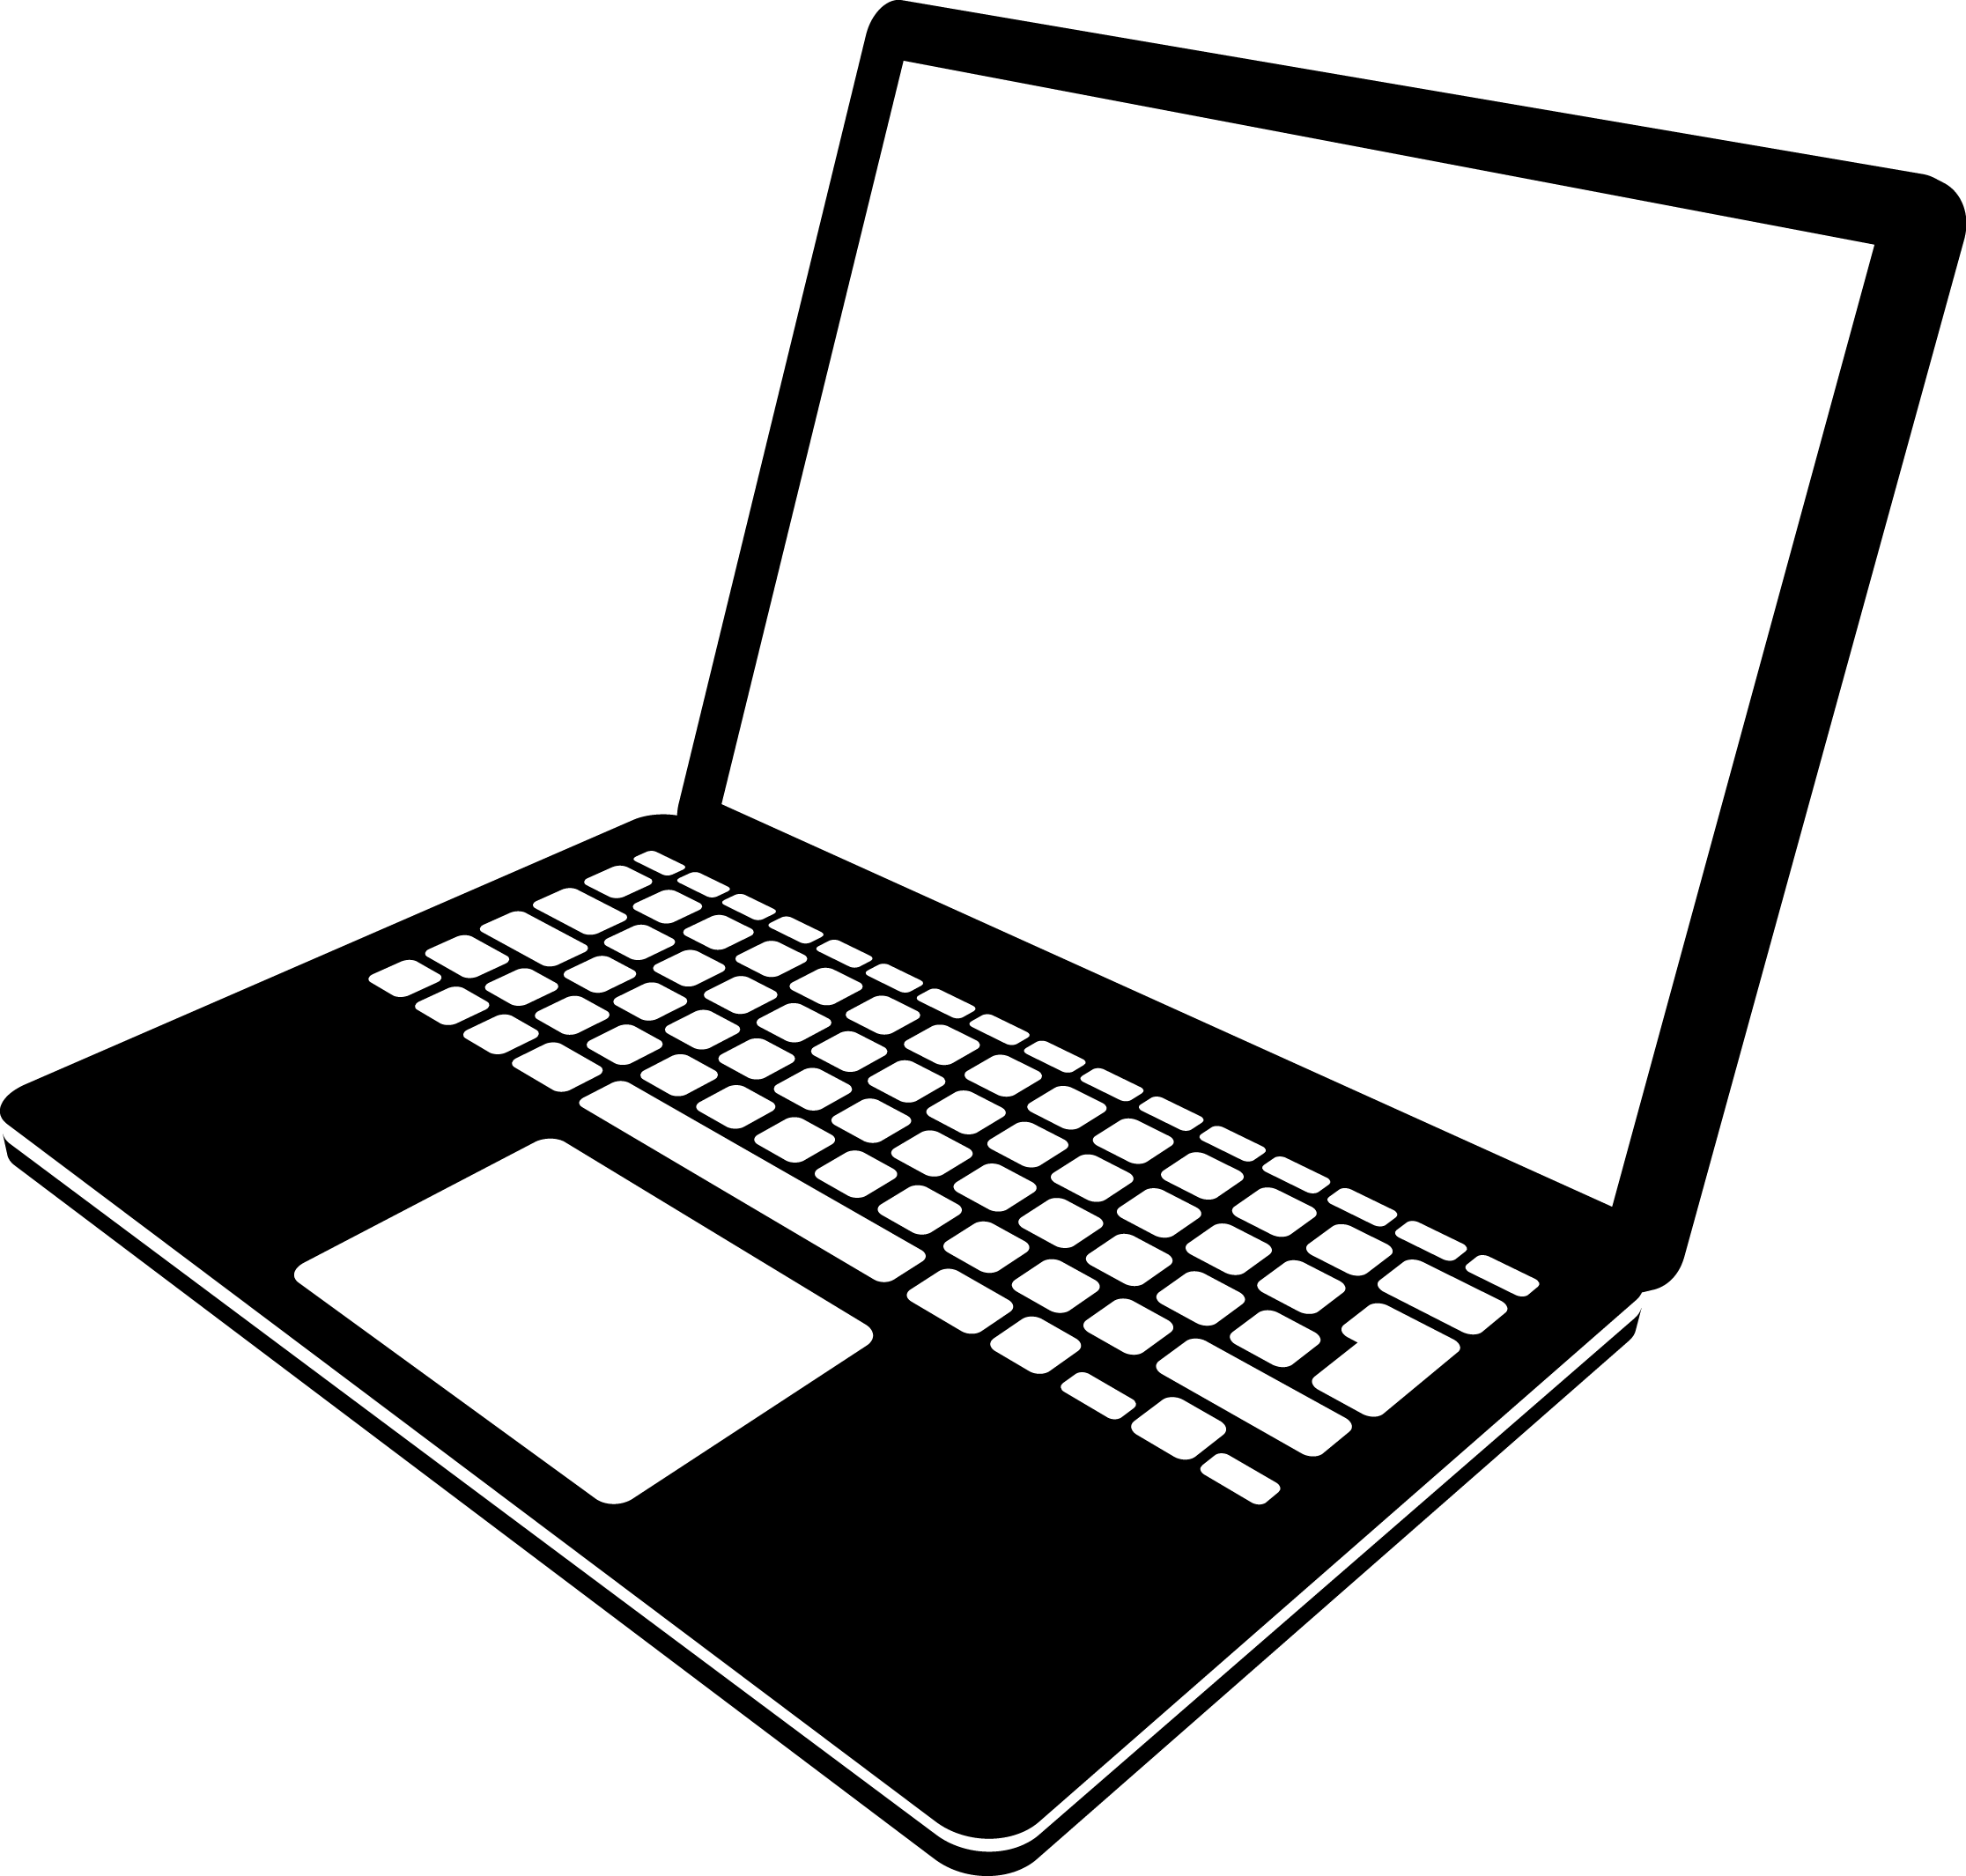 Компьютер контурный рисунок фото